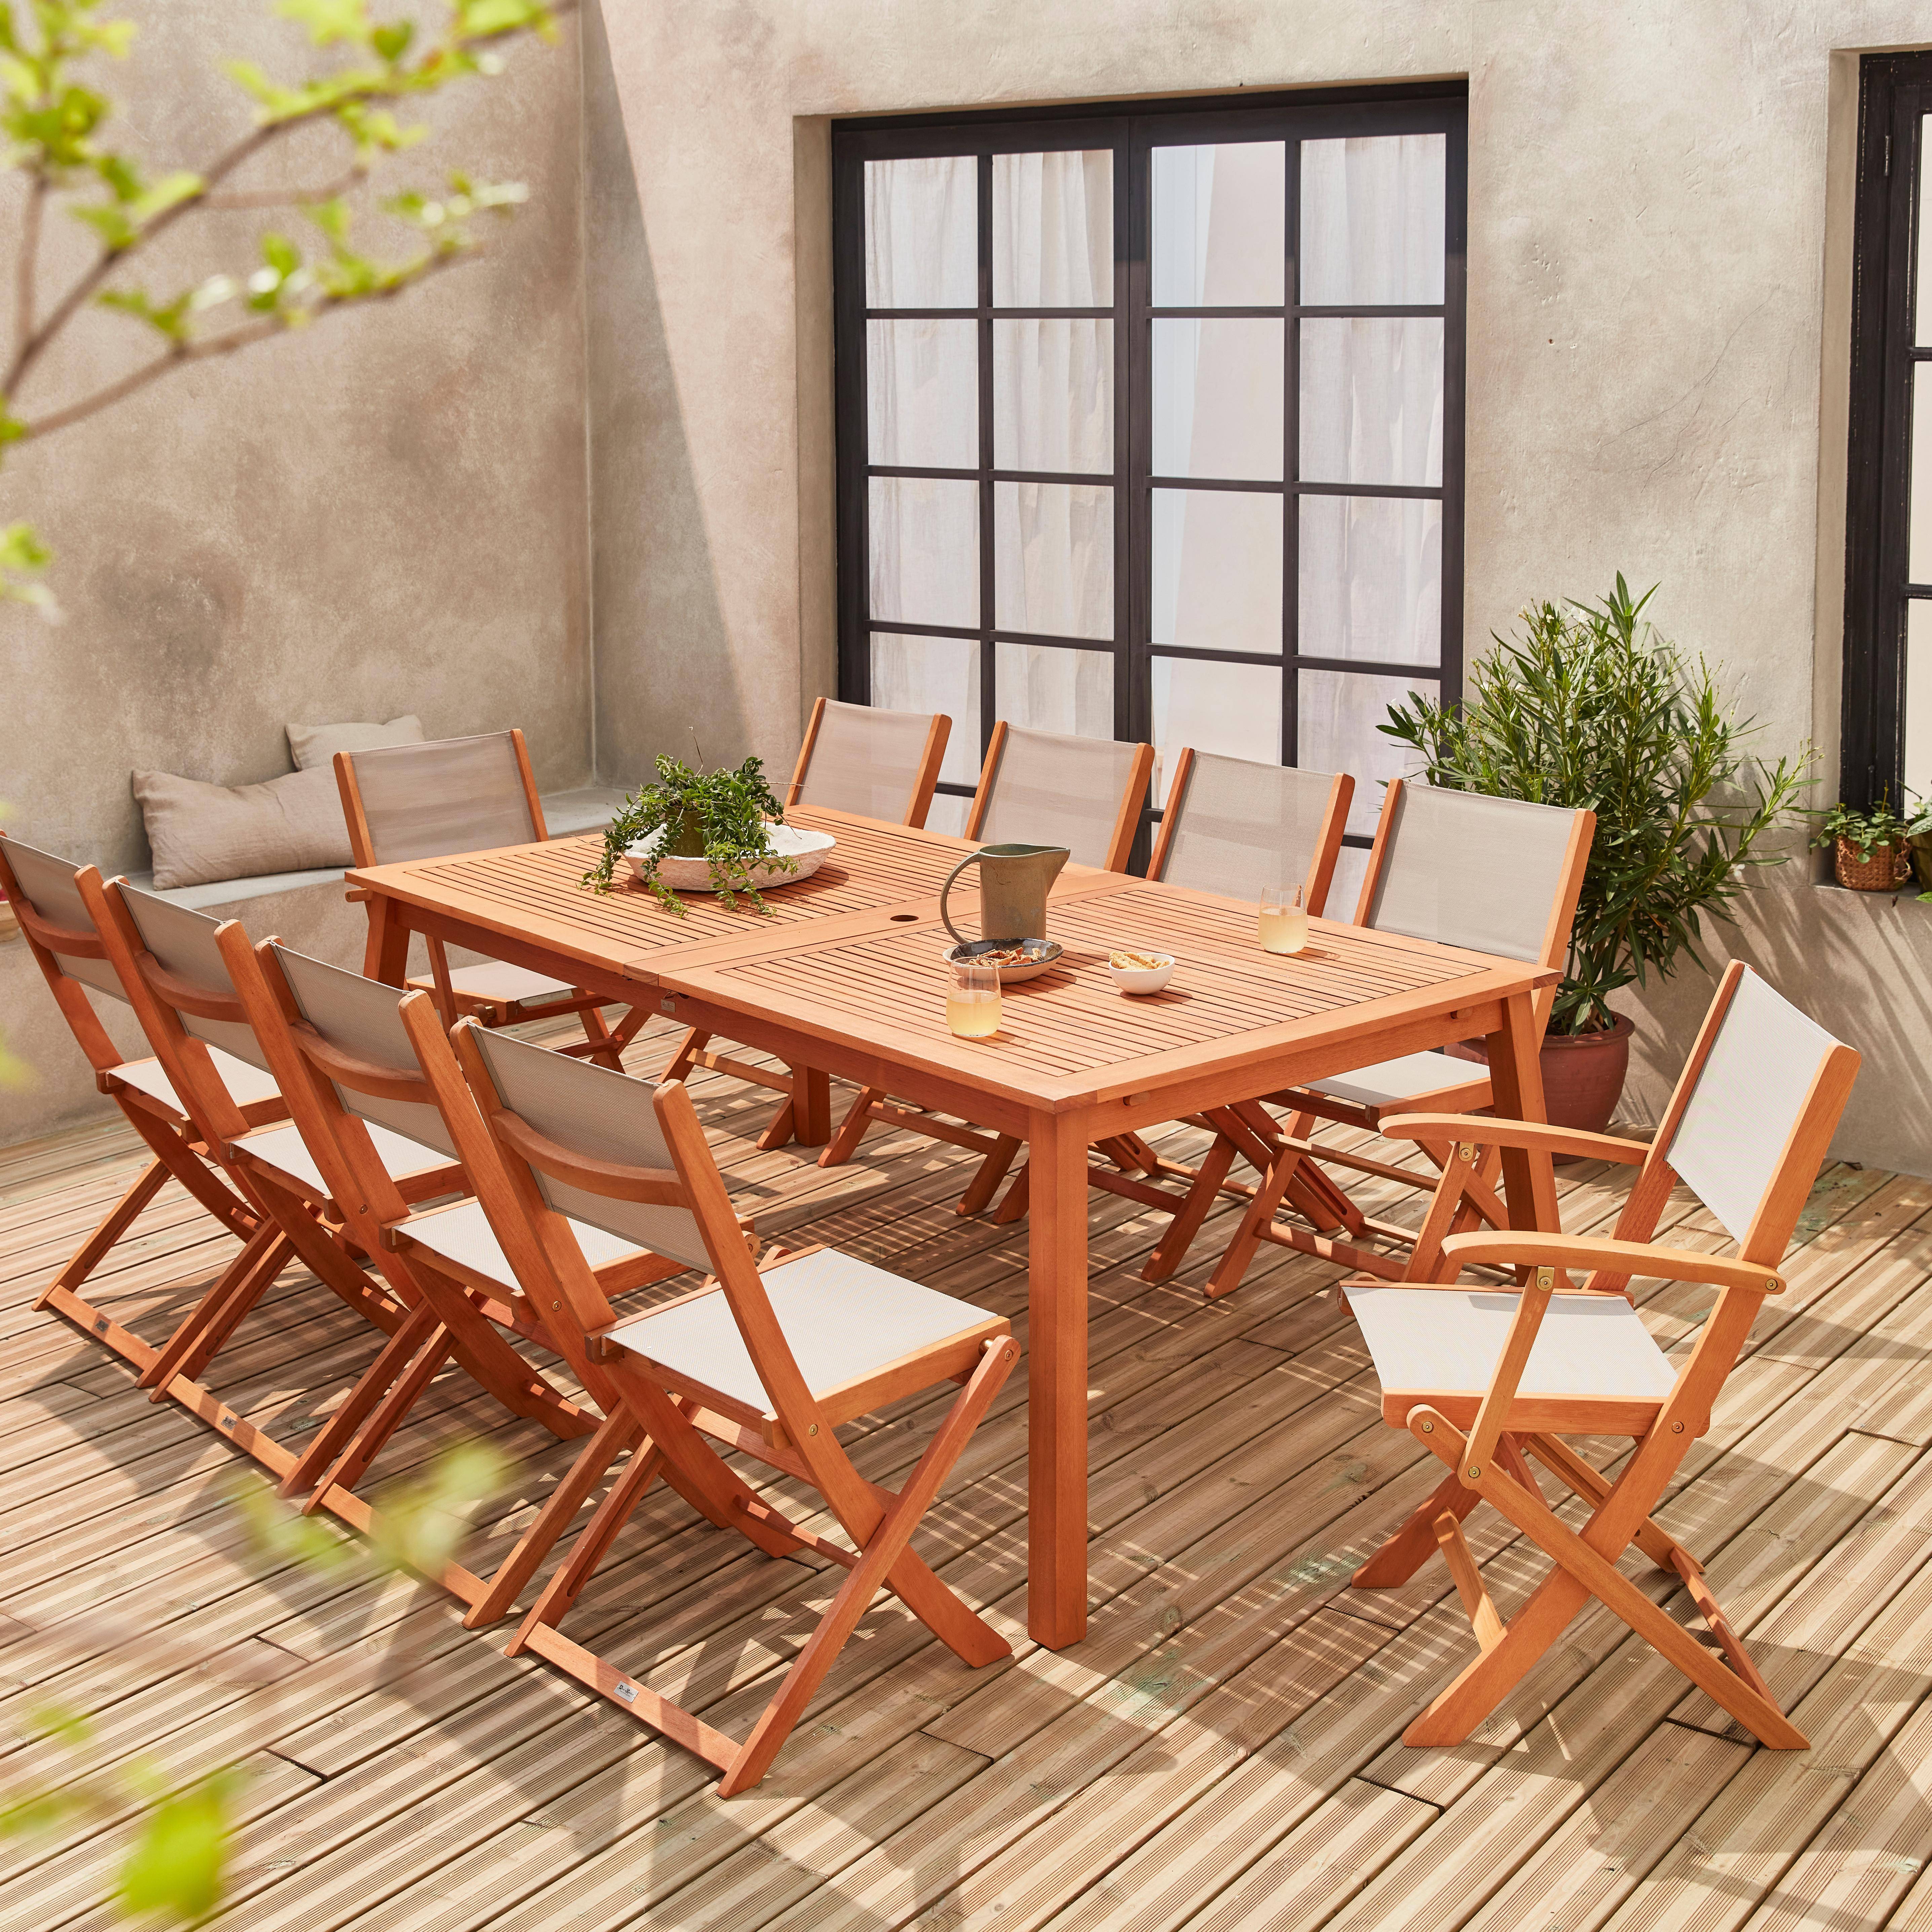 Ausziehbare Gartenmöbel aus Holz - Almeria Tisch 200/250/300cm mit 2 Verlängerungen, 2 Sesseln und 8 Stühlen, aus geöltem FSC Eukalyptusholz und taupgrau Textilene Photo2